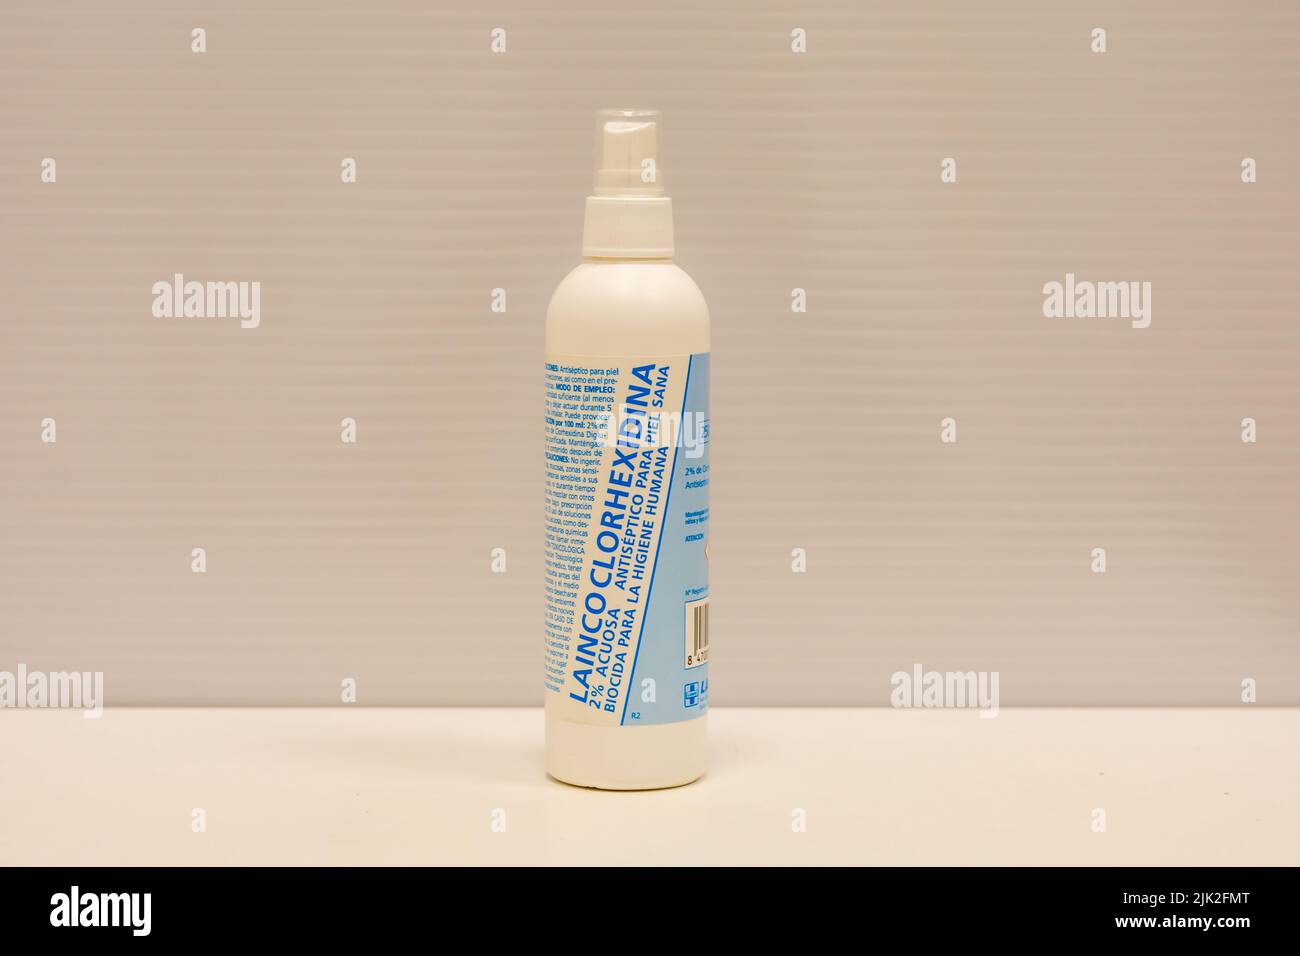 Fotografia di una bottiglia di spray clorexidina, antisettico topico per la disinfezione della pelle, ferite e materiale medico Foto Stock